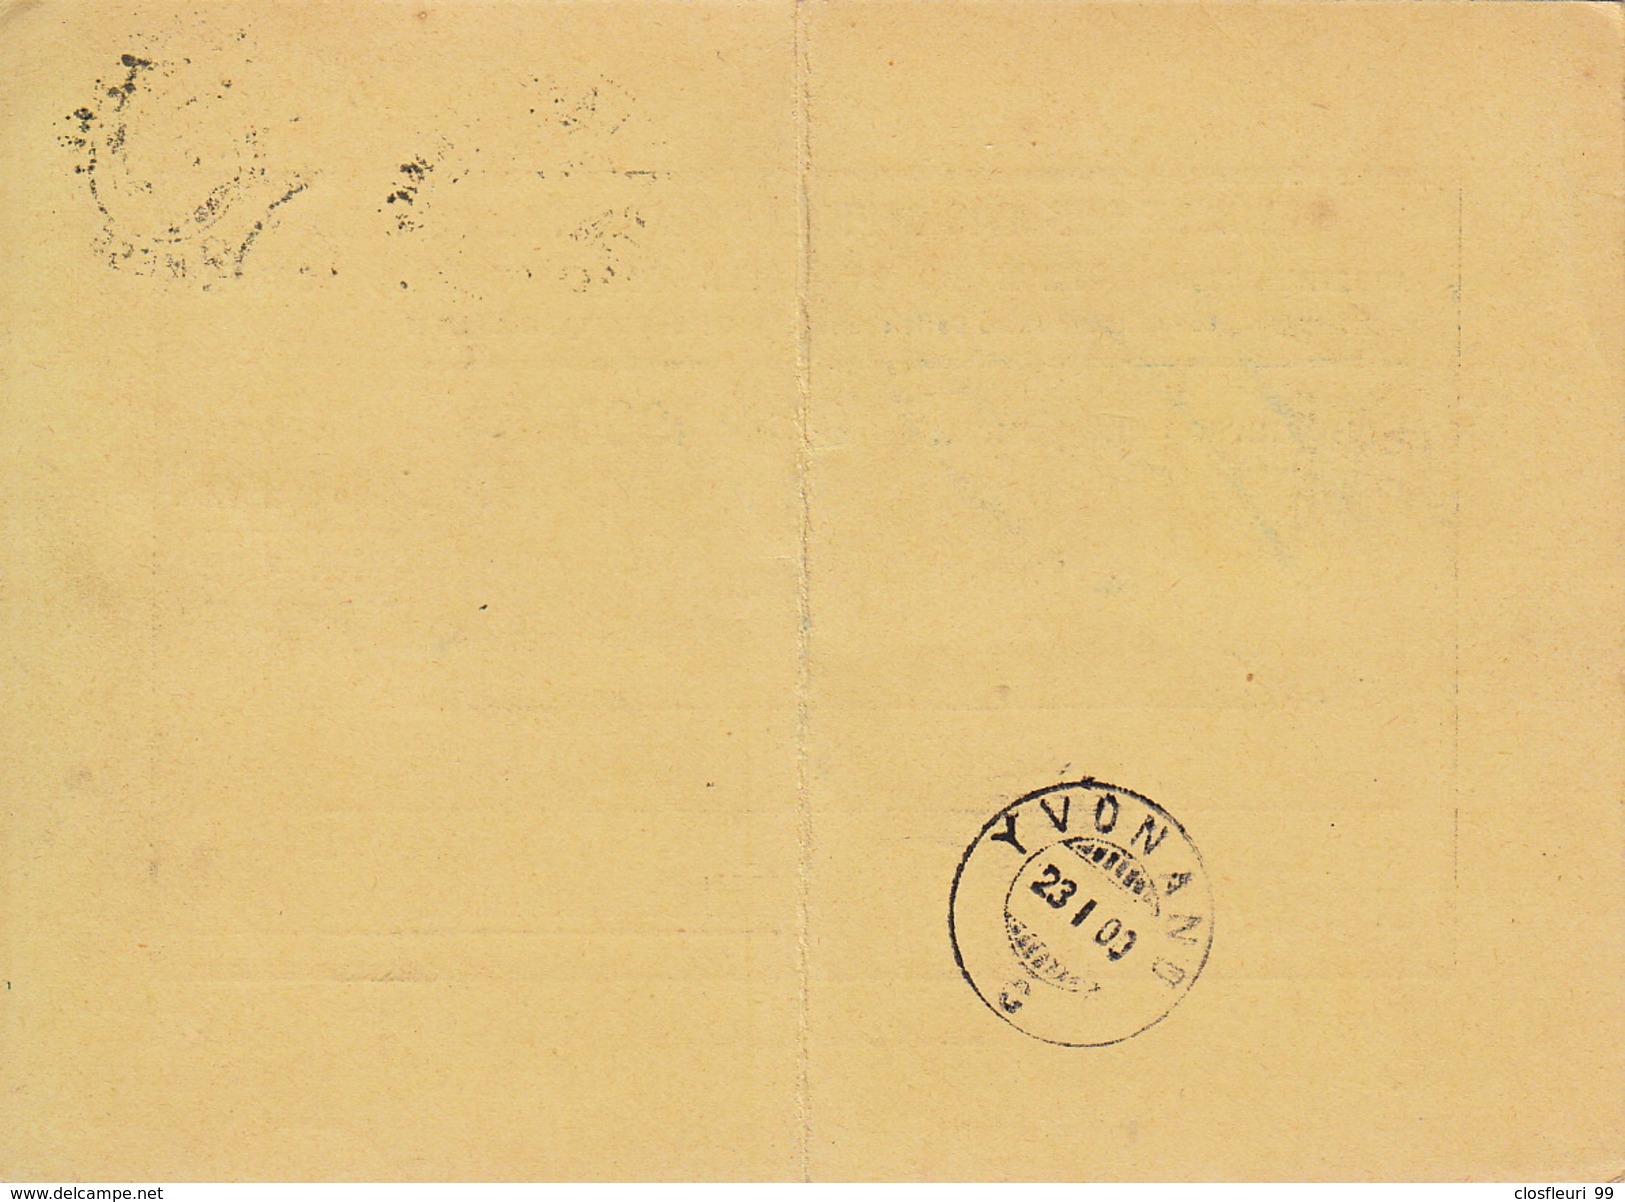 Remboursement  Pour 1900: Feuille Avis Officiels Du Canton De VD / 23.1.1900. Cachet Arrivée Yvonand - Lettres & Documents